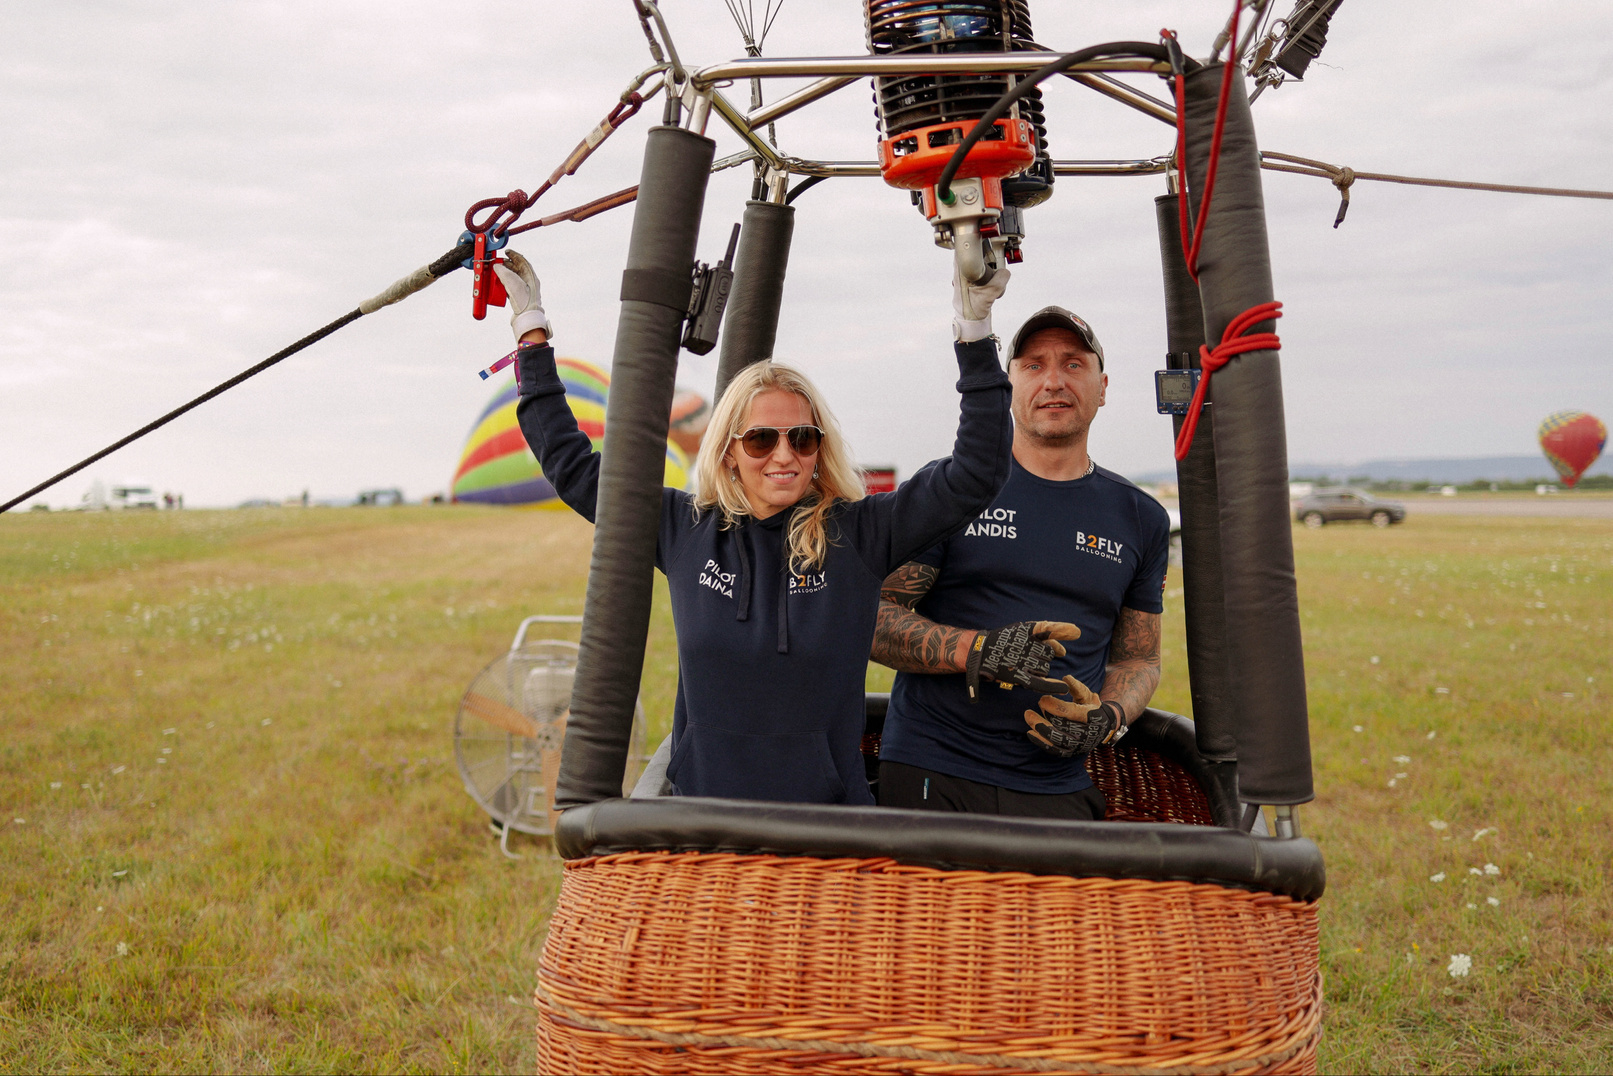 B2Fly Ballooning komanda. Pilotu piedzīvojumi gaisa balonā. Lidot gaisa balonā ir aizraujošākai piedzīvojums. Vērot pasauli no putna lidojuma, paceļoties virs koku galotnēm, lēni slīdot pāri laukiem un mežiem atbrīvo prātu un piepilda sirdi.